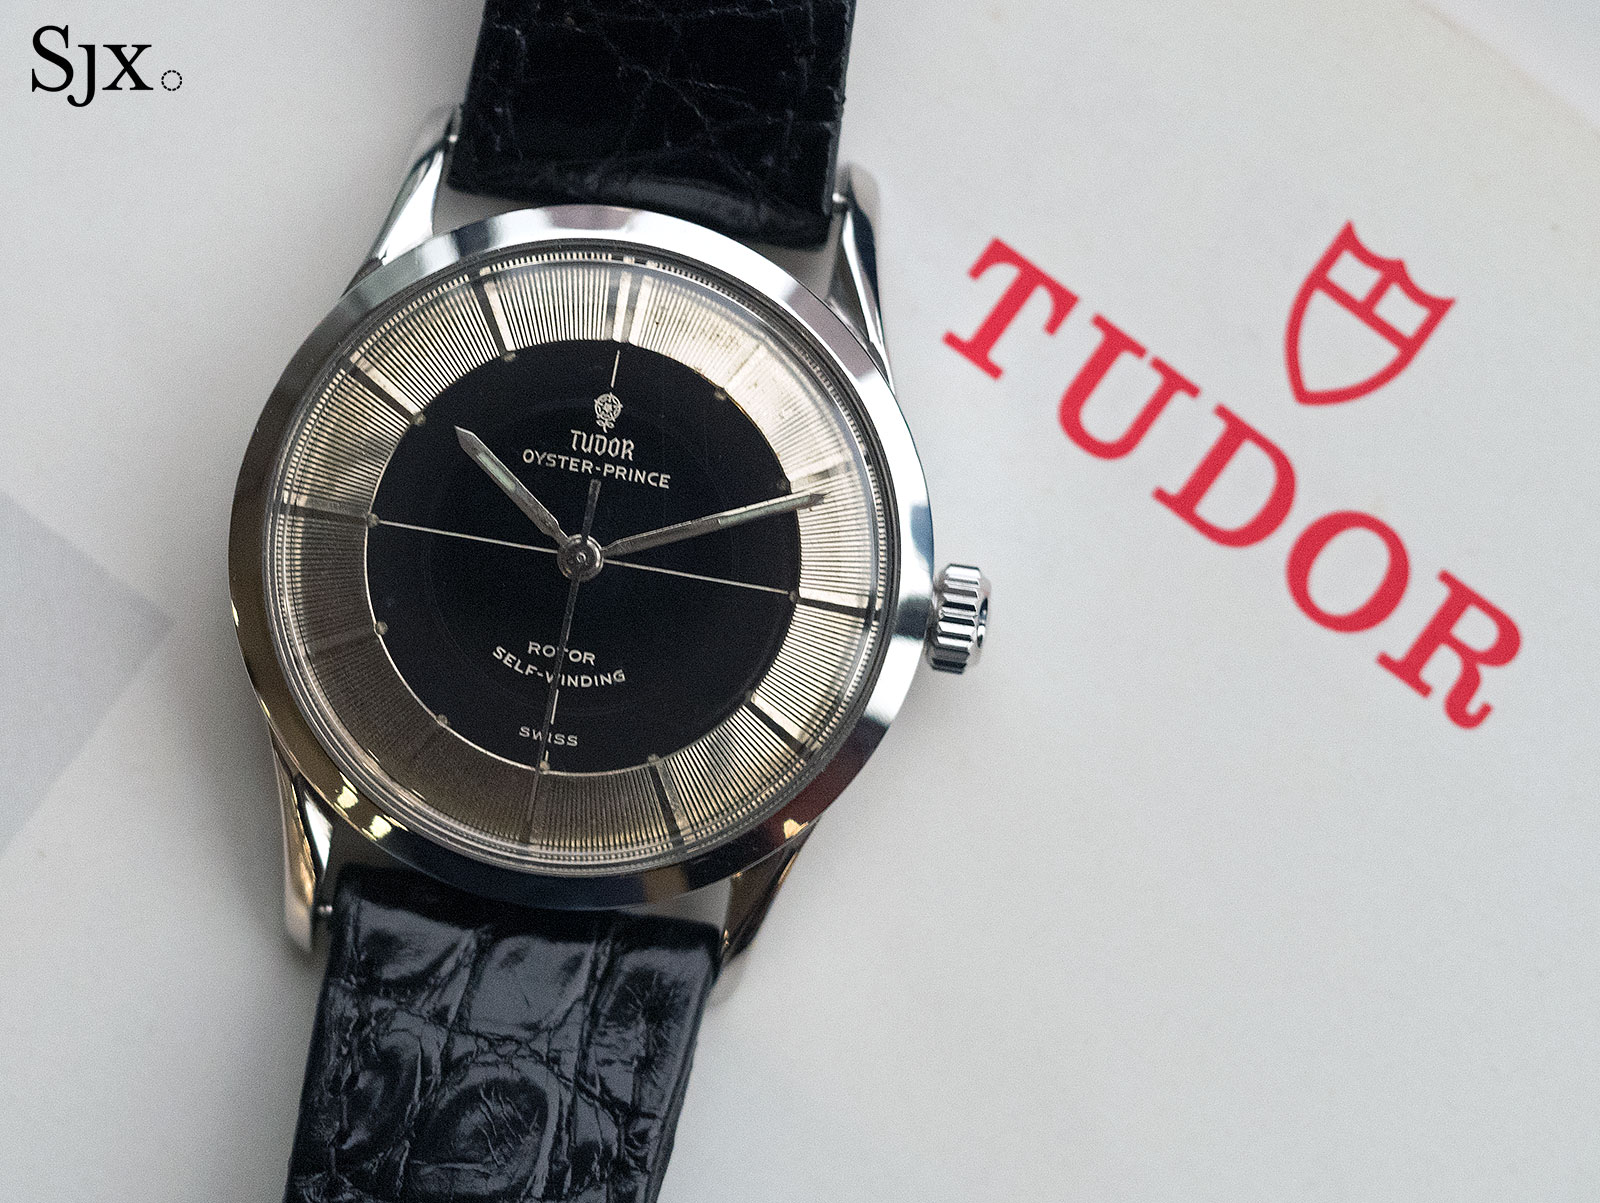 Tudor Oyster Prince Tuxedo ref. 7950 1